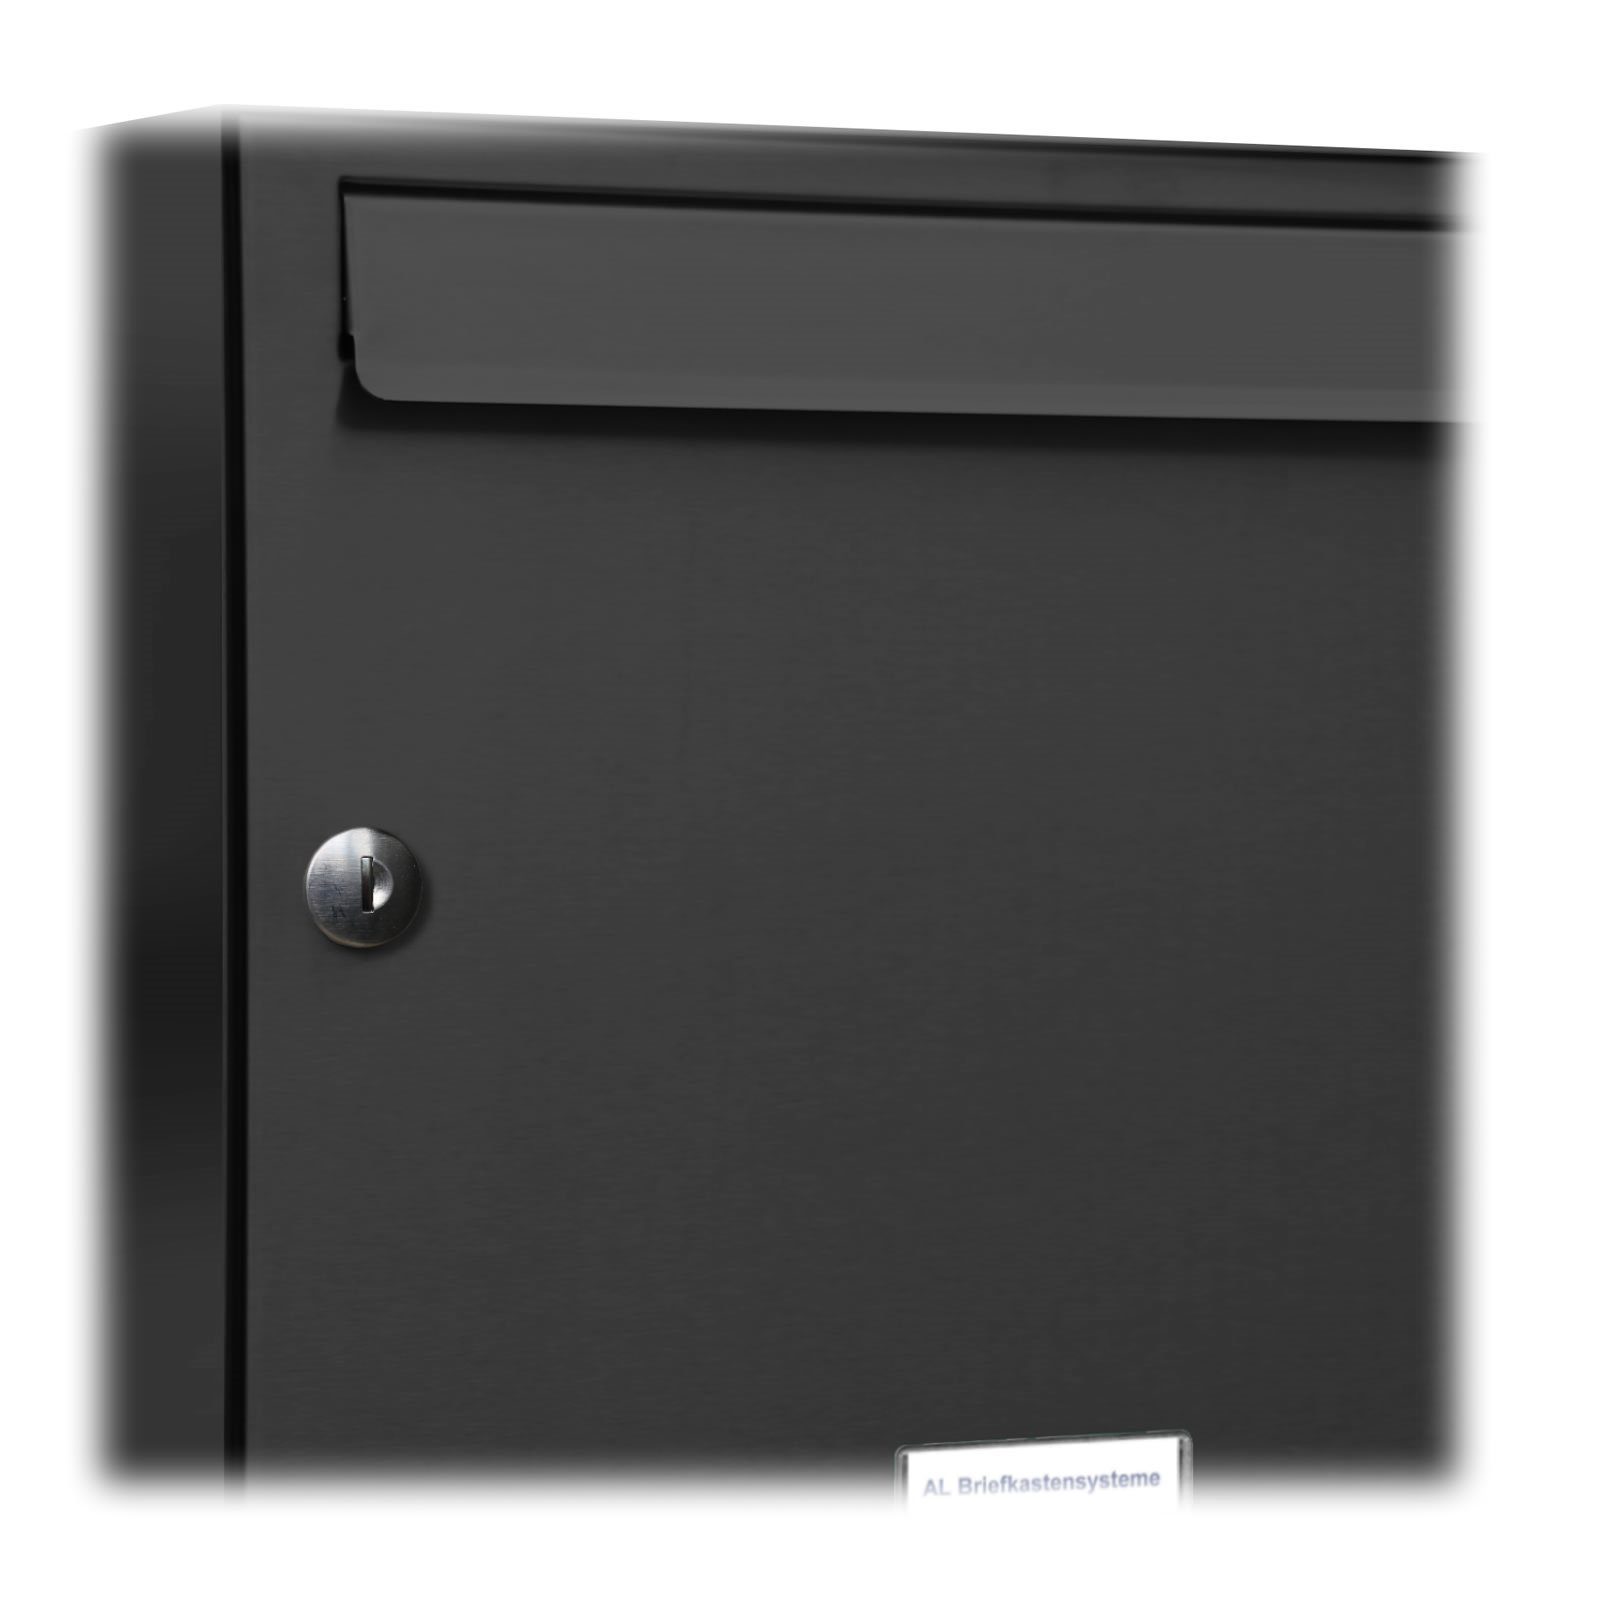 RAL AL 12er Briefkastensysteme Premium 7016 Außen 4x3 für Wand Farbe Anthrazit Wandbriefkasten Briefkasten